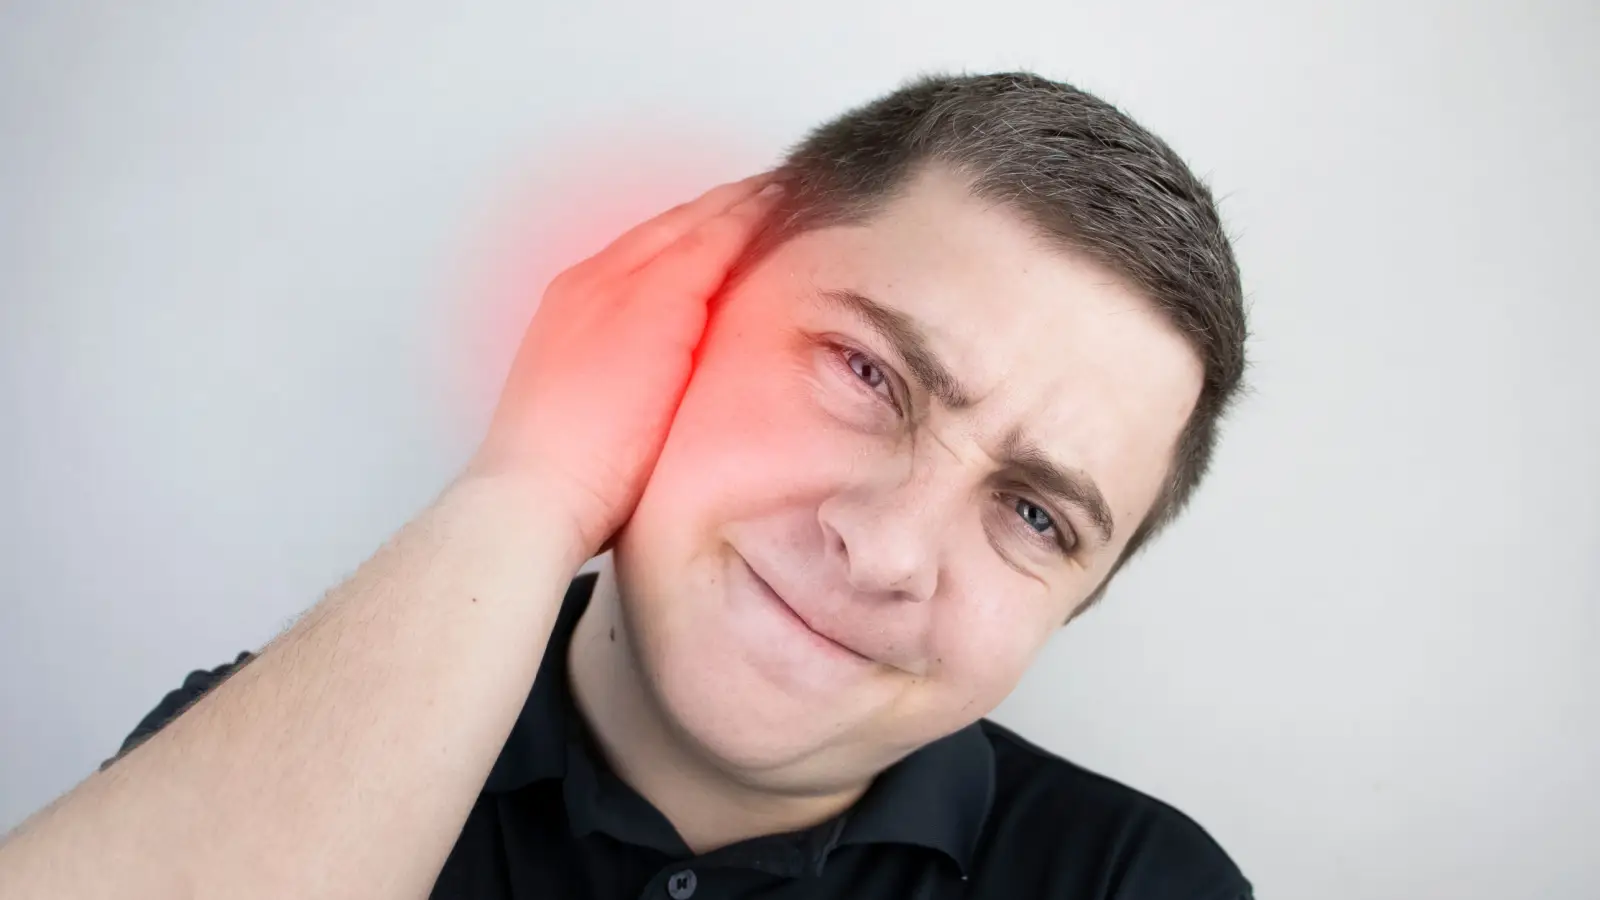 ما هي طرق علاج التهاب الأذن الوسطى؟ وكيف يمكن تجنبها؟